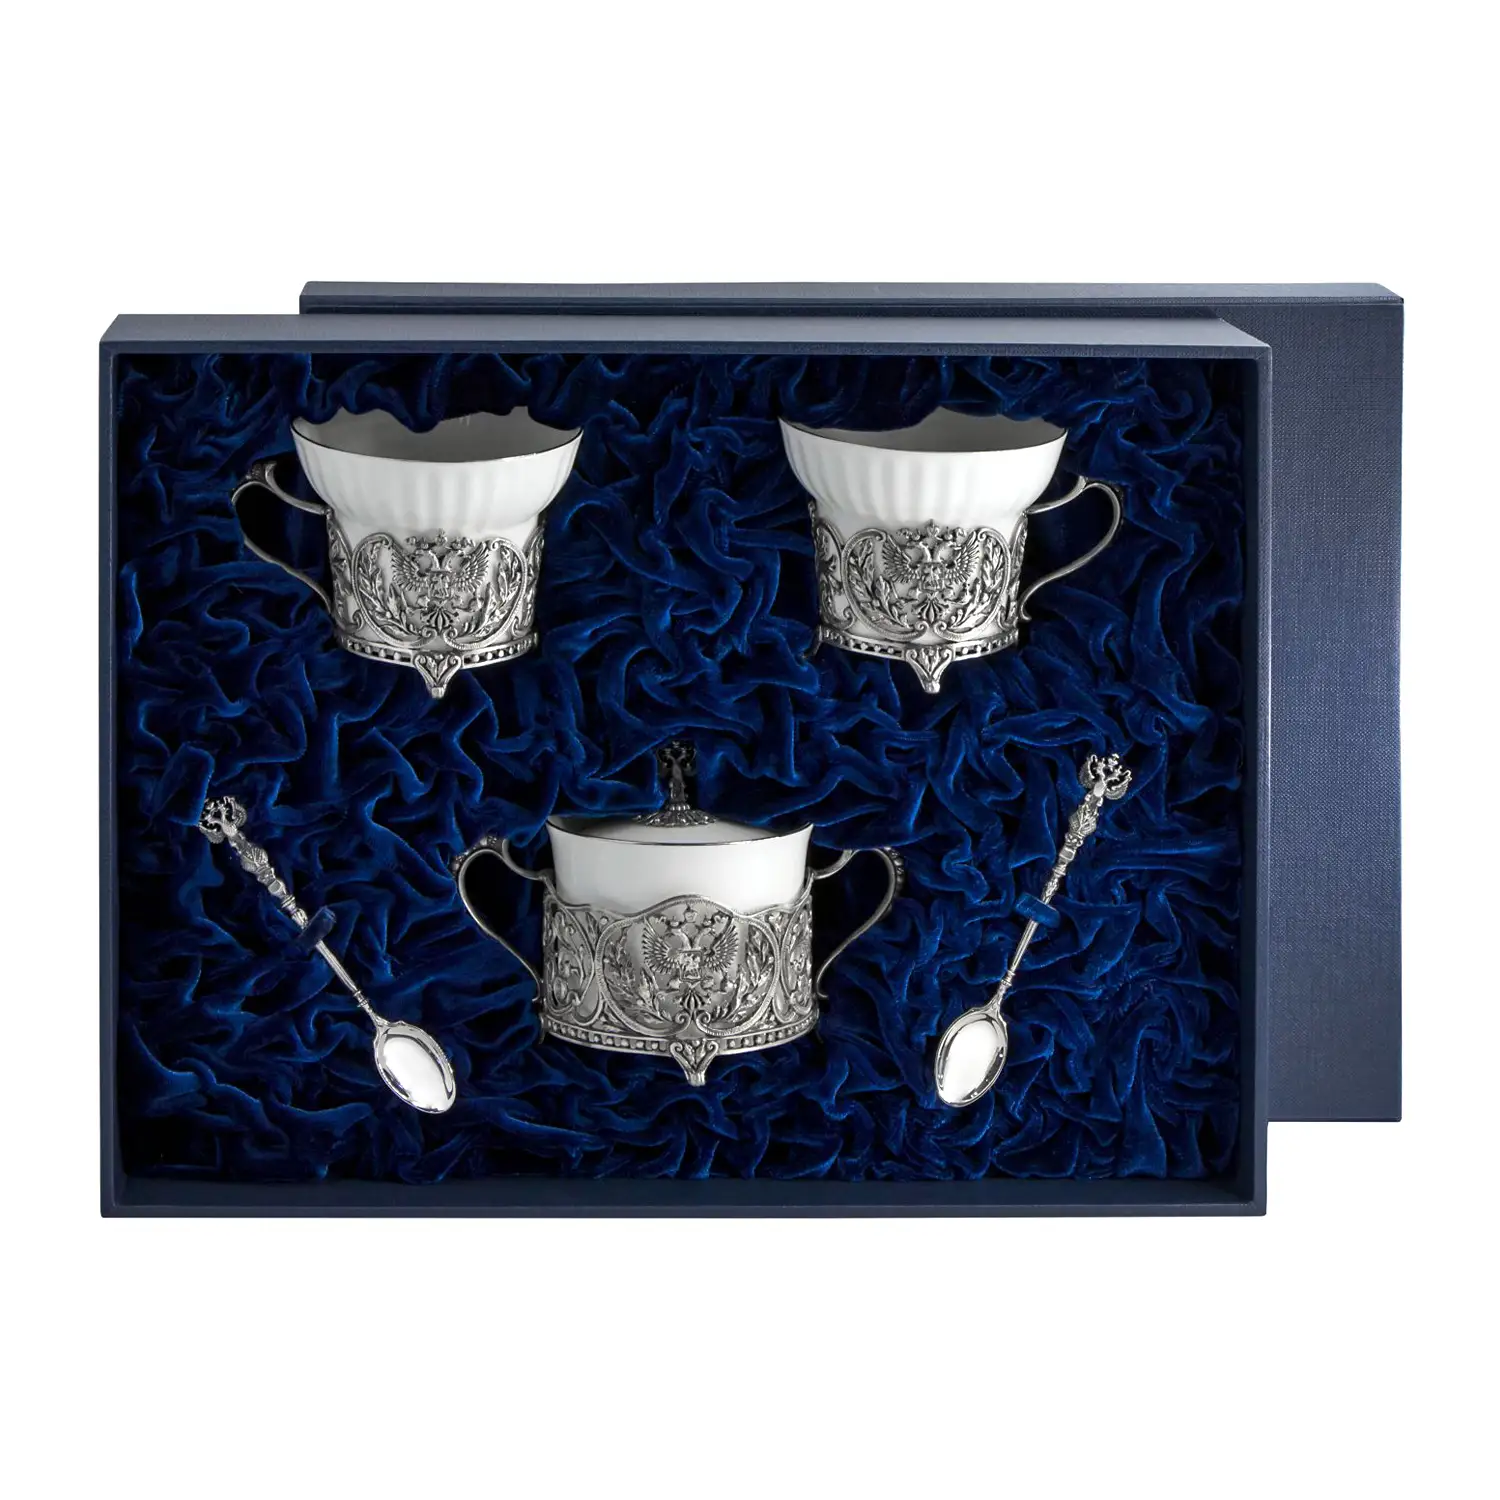 Набор Герб: ложка, чашка, сахарница (Серебро 925) набор королевская охота ложка чашка сахарница серебро 925